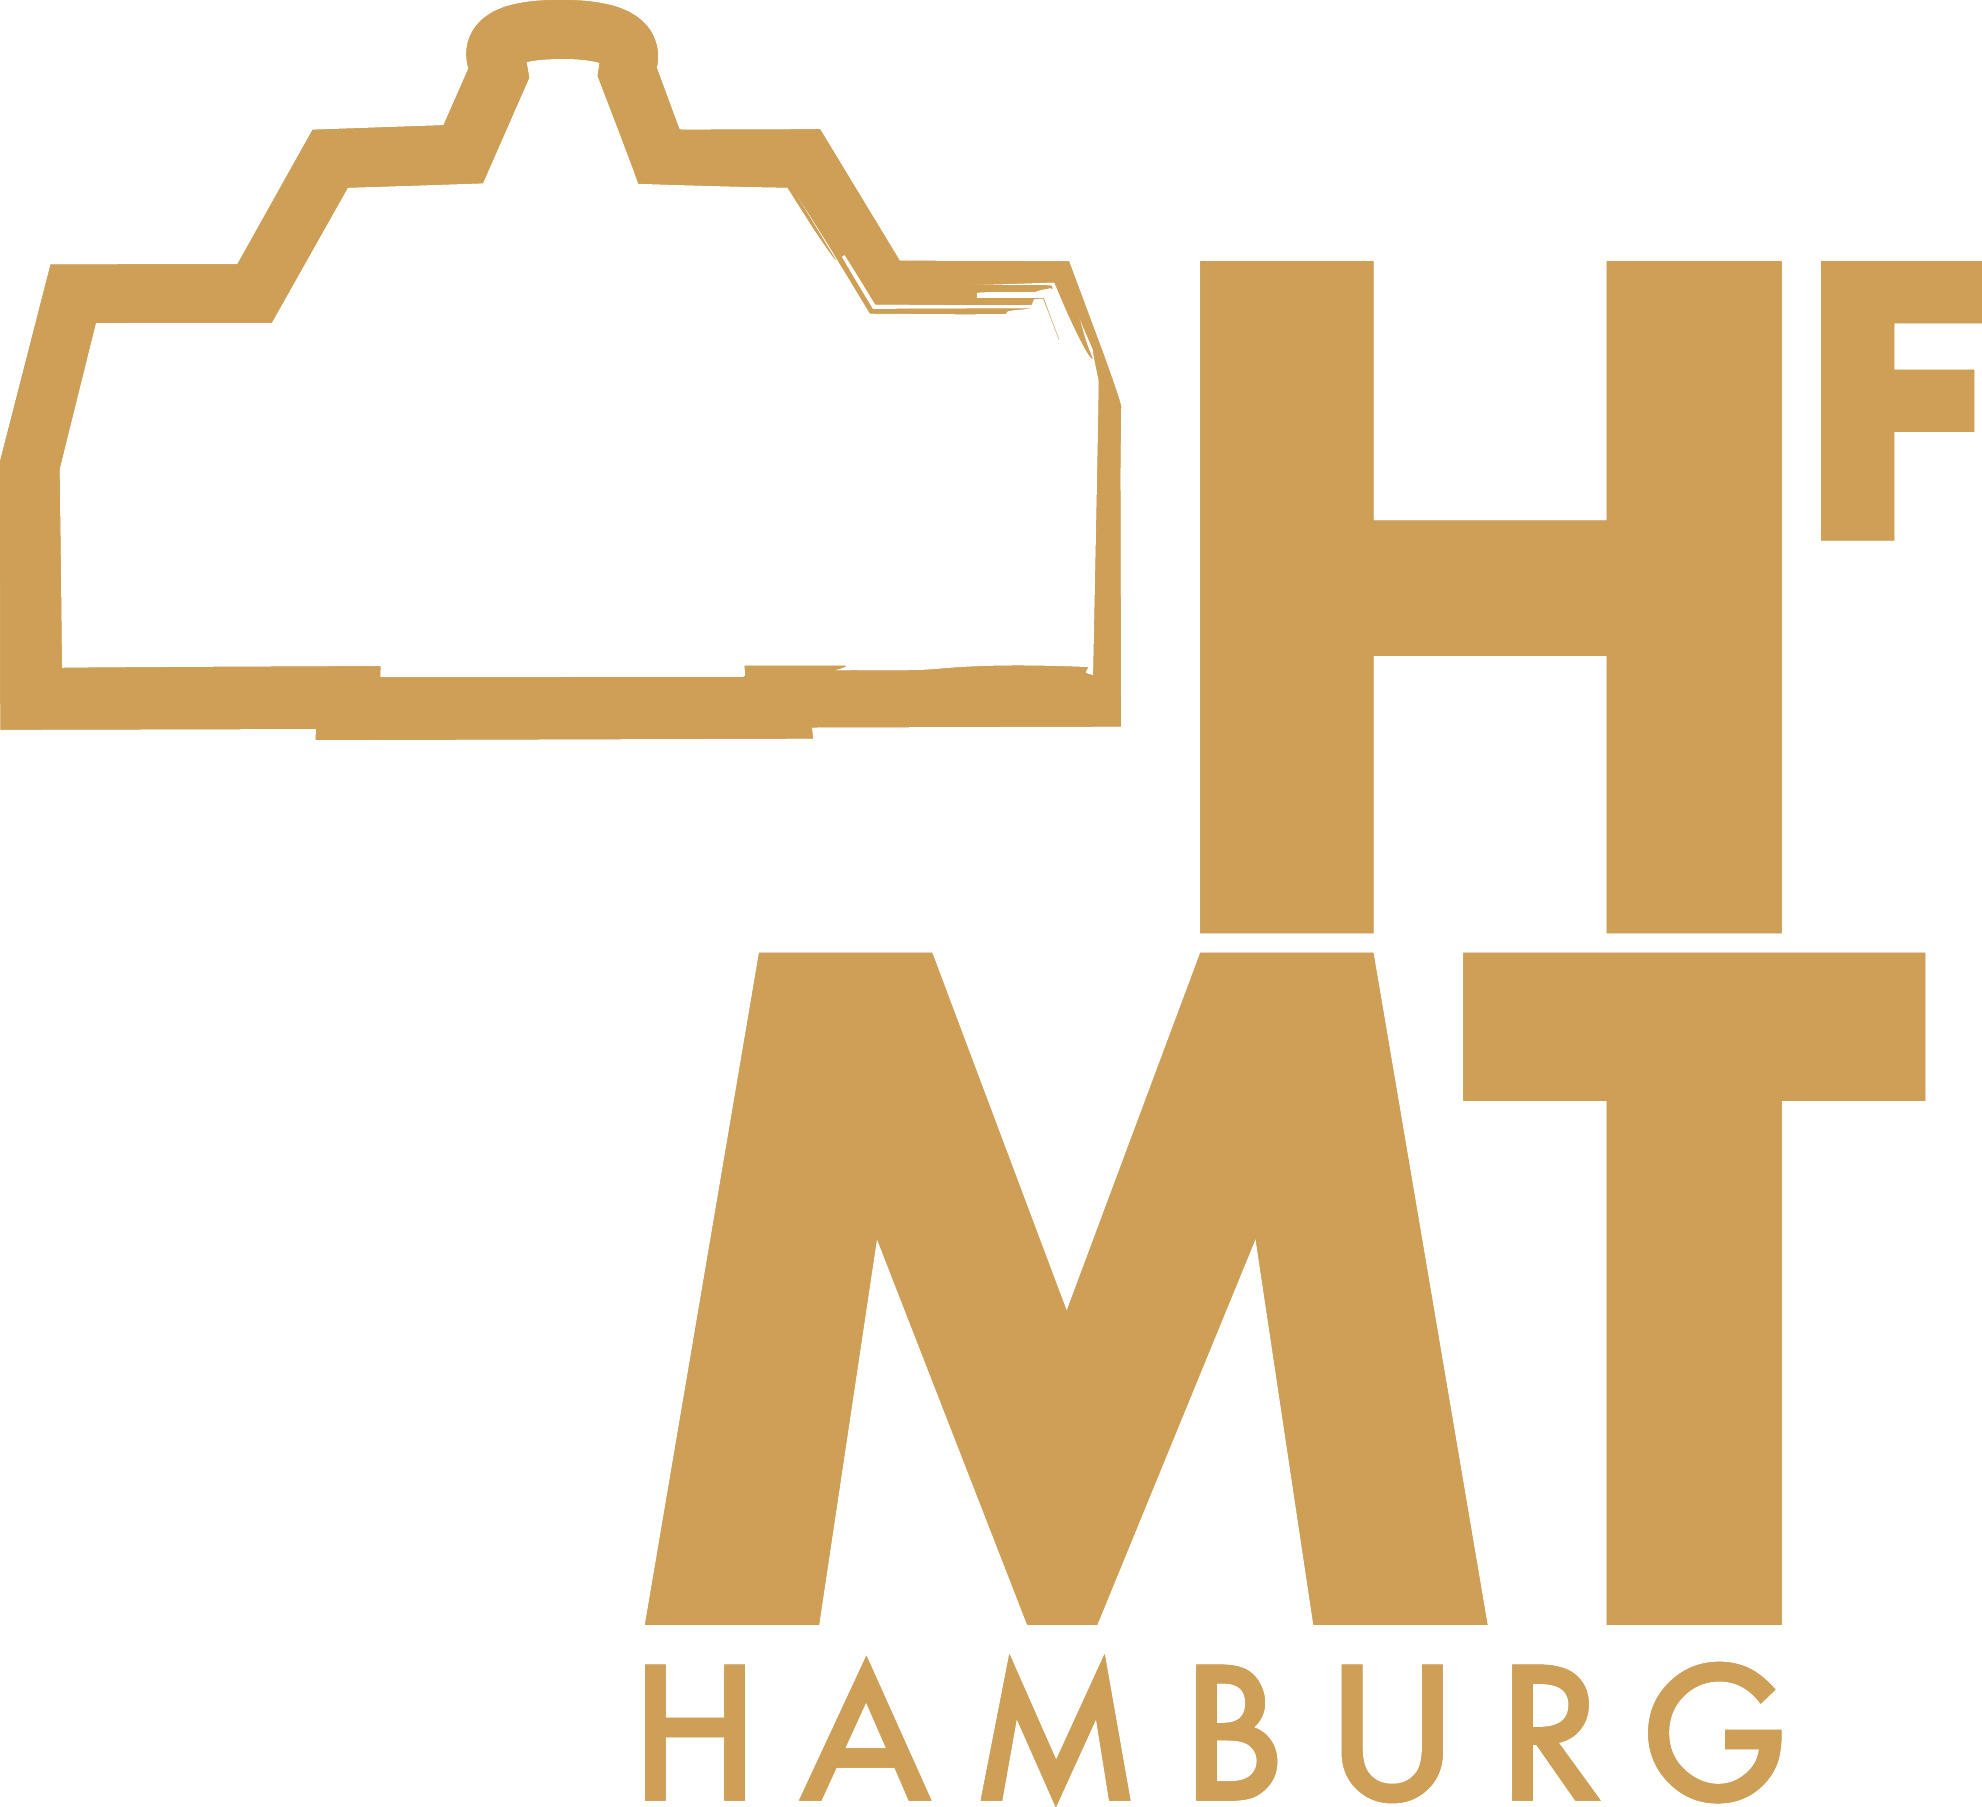 Hochschule für Musik und Theater Hamburg